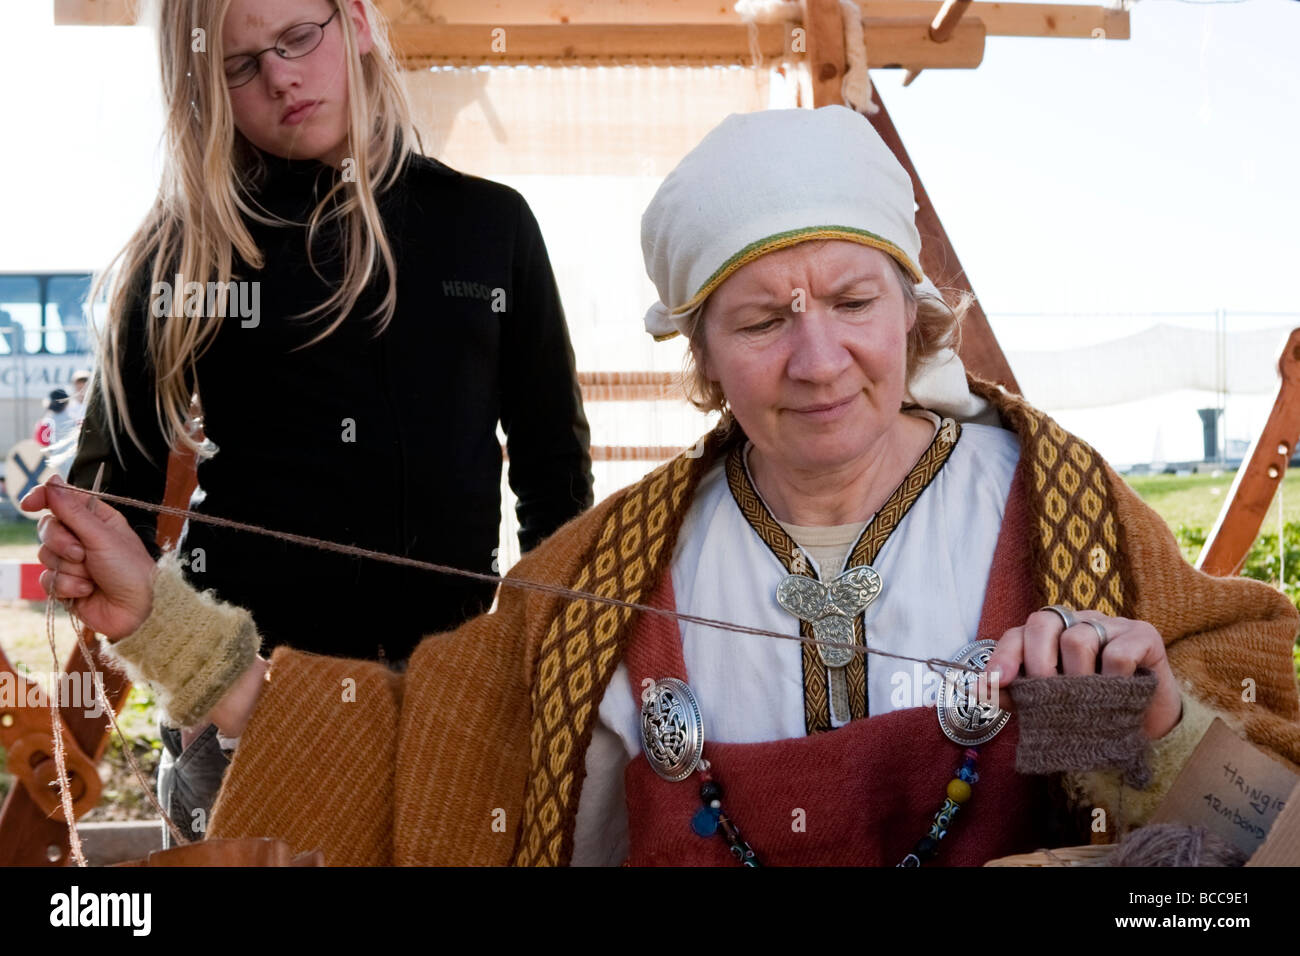 Mujer tejiendo, ella está vistiendo ropa tradicional de la era vikinga. Festival Vikingo en Hafnarfjordur, la mayor zona de Reykjavik, Islandia Foto de stock